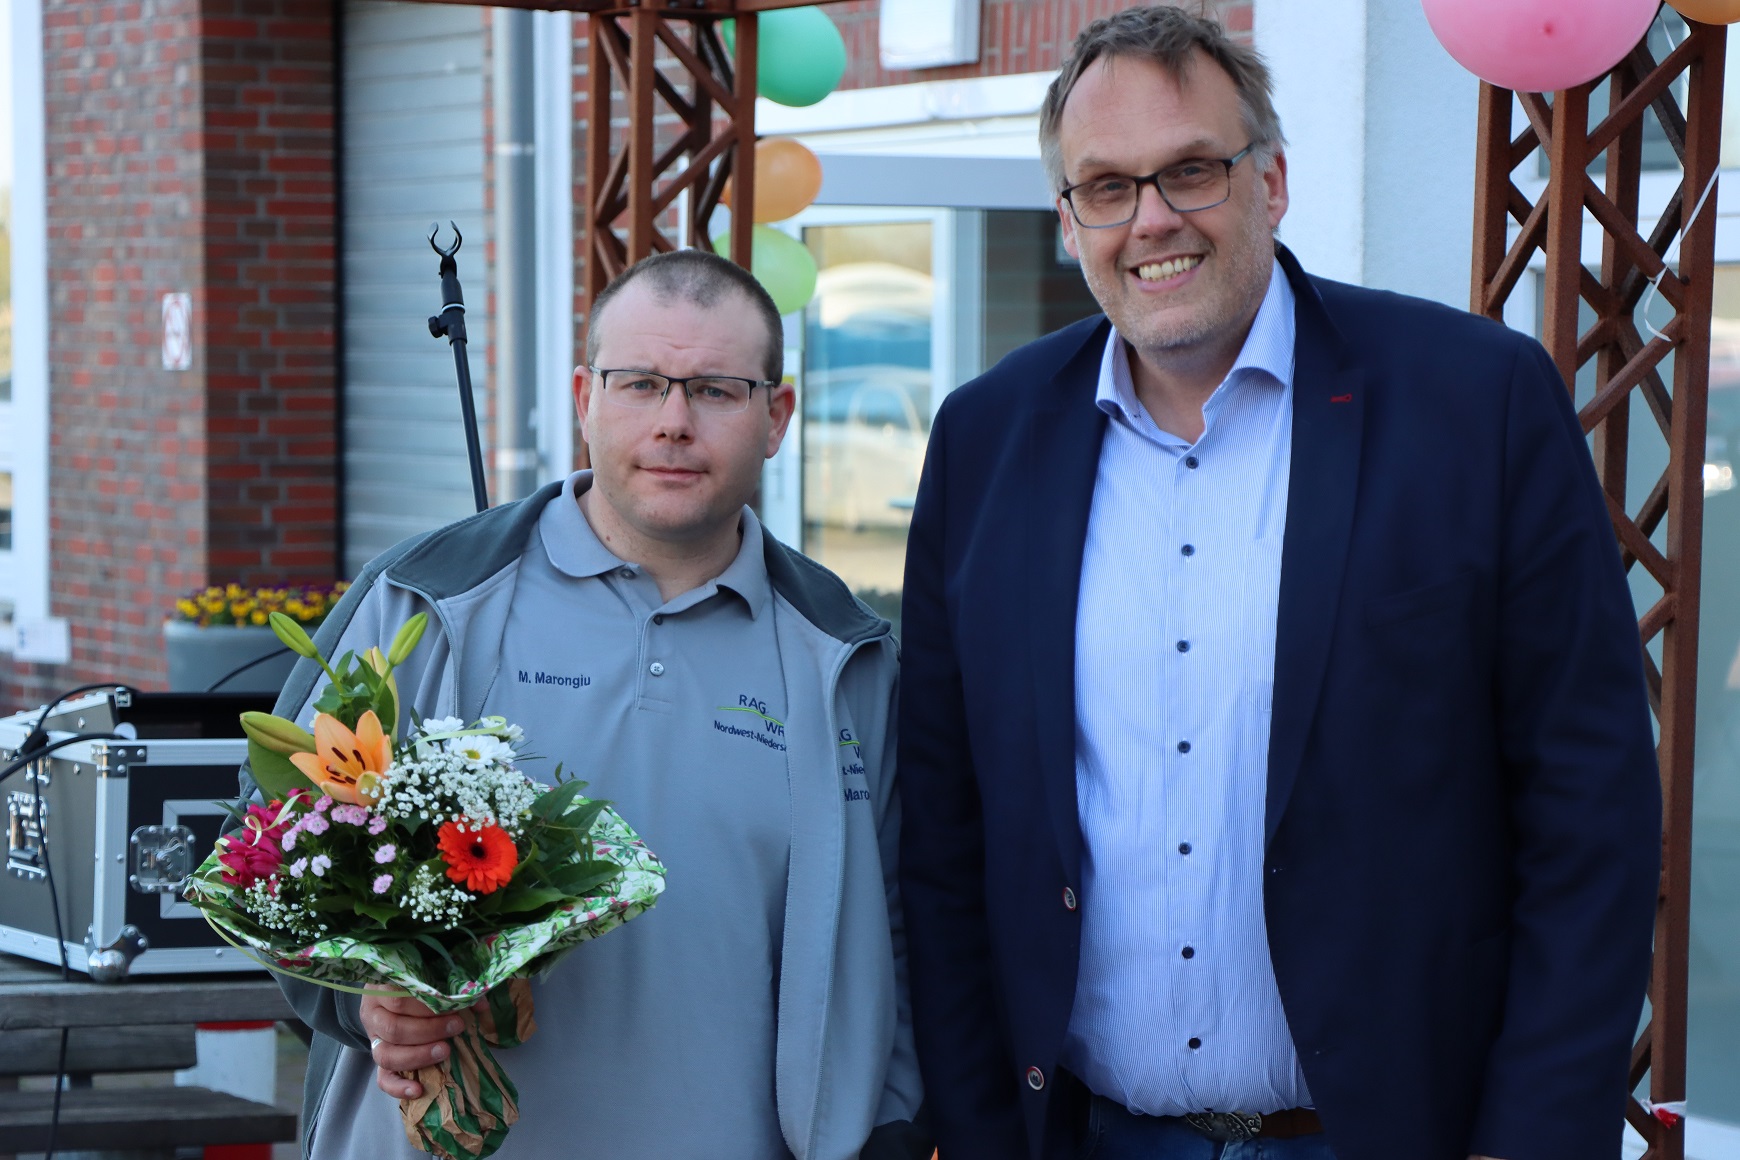 Geschäftsführer Klaus Puschmann und ein Beschäftigter von der GPS. Der Beschäftigte hält einen Blumenstrauß in der Hand